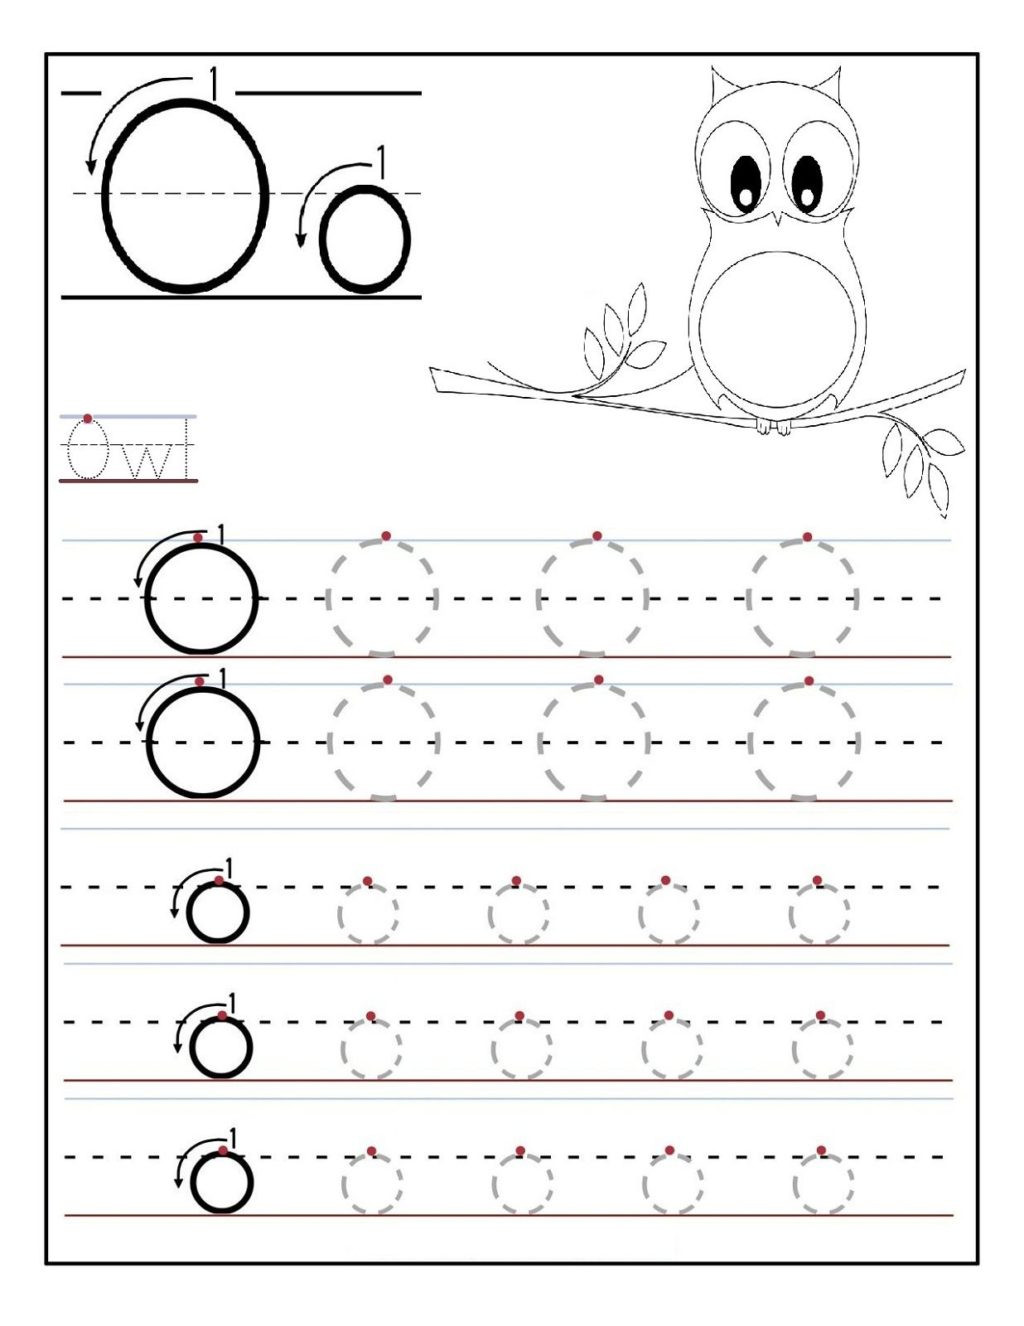 Letter O Worksheets for Preschool Worksheet Awesome O Worksheets for Kindergarten Image